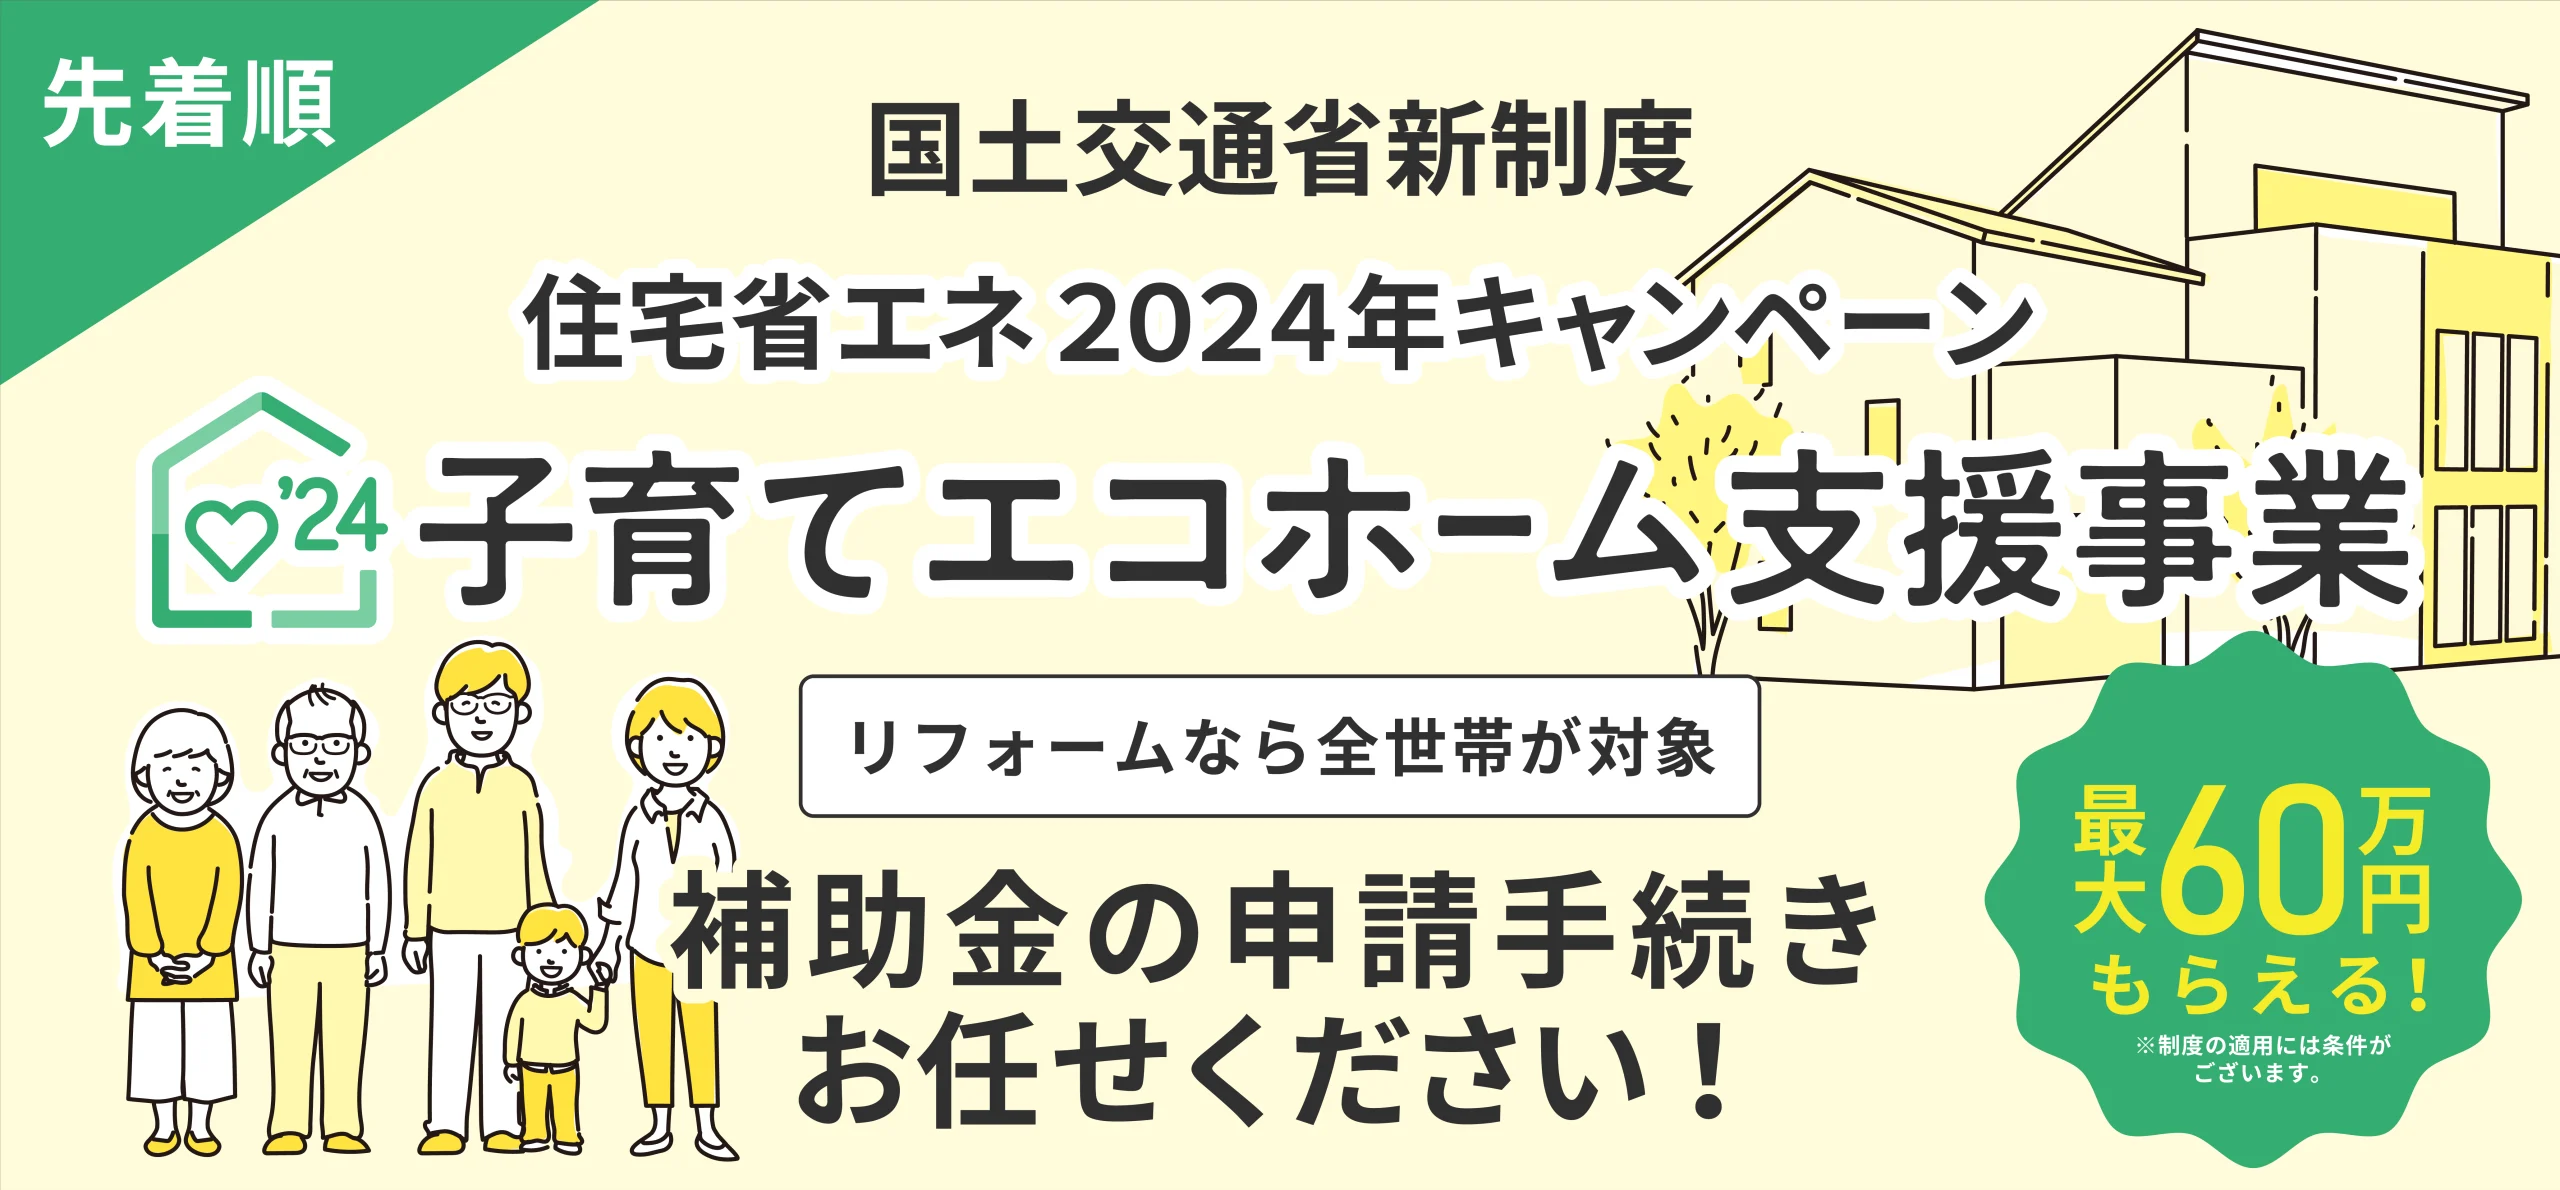 子育てエコホーム支援事業 2024年 横浜 メイン画像